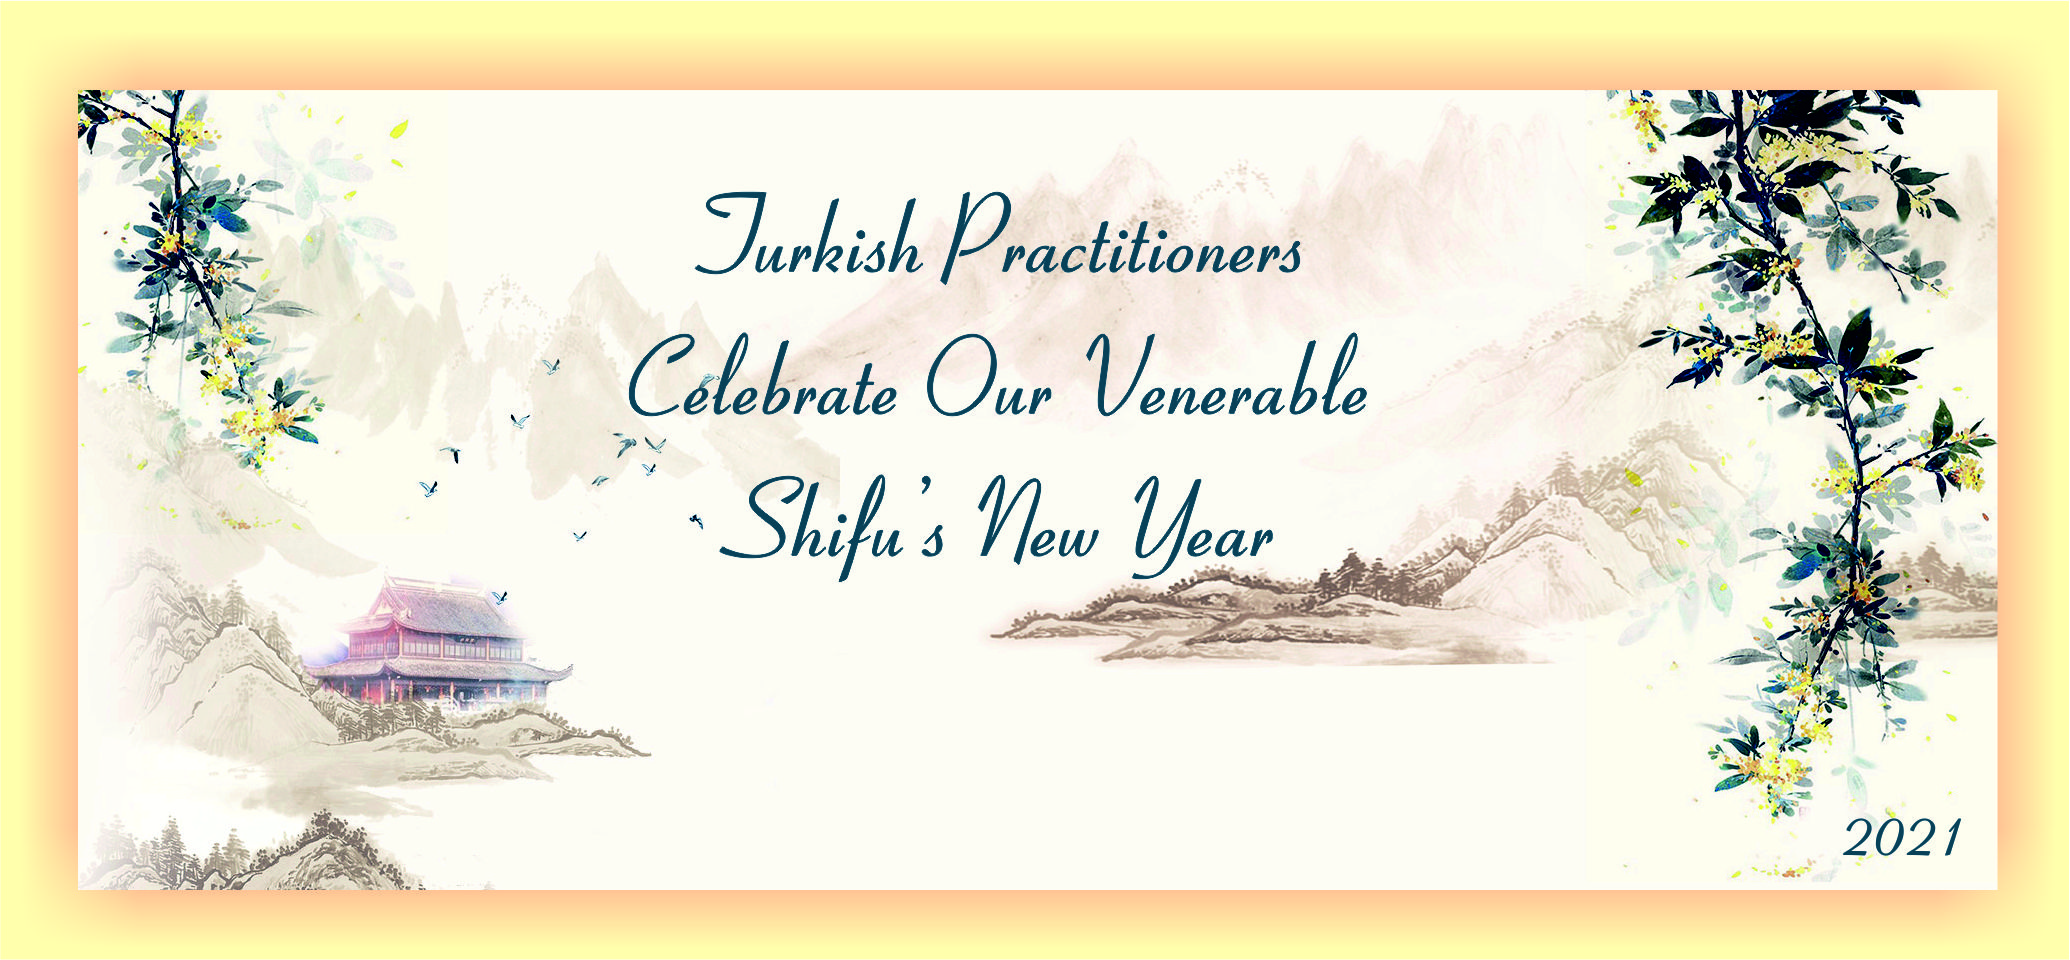 Image for article Türkiye'deki Uygulayıcılar Saygıdeğer Shifu'nun 2021 Yeni Yılını Kutluyor!